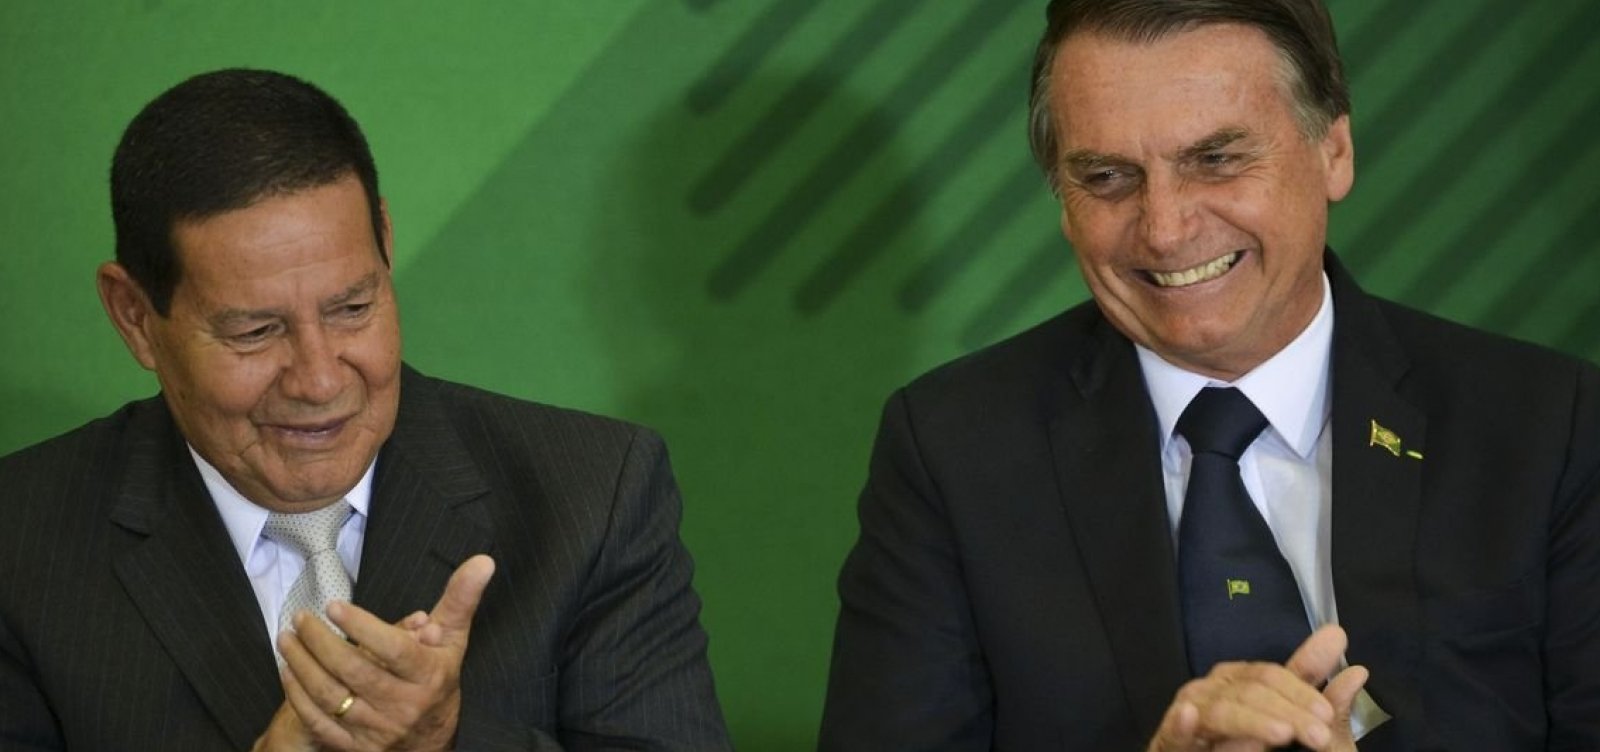 Em Davos, Bolsonaro vai mostrar que não é 'Átila, o huno', diz Mourão